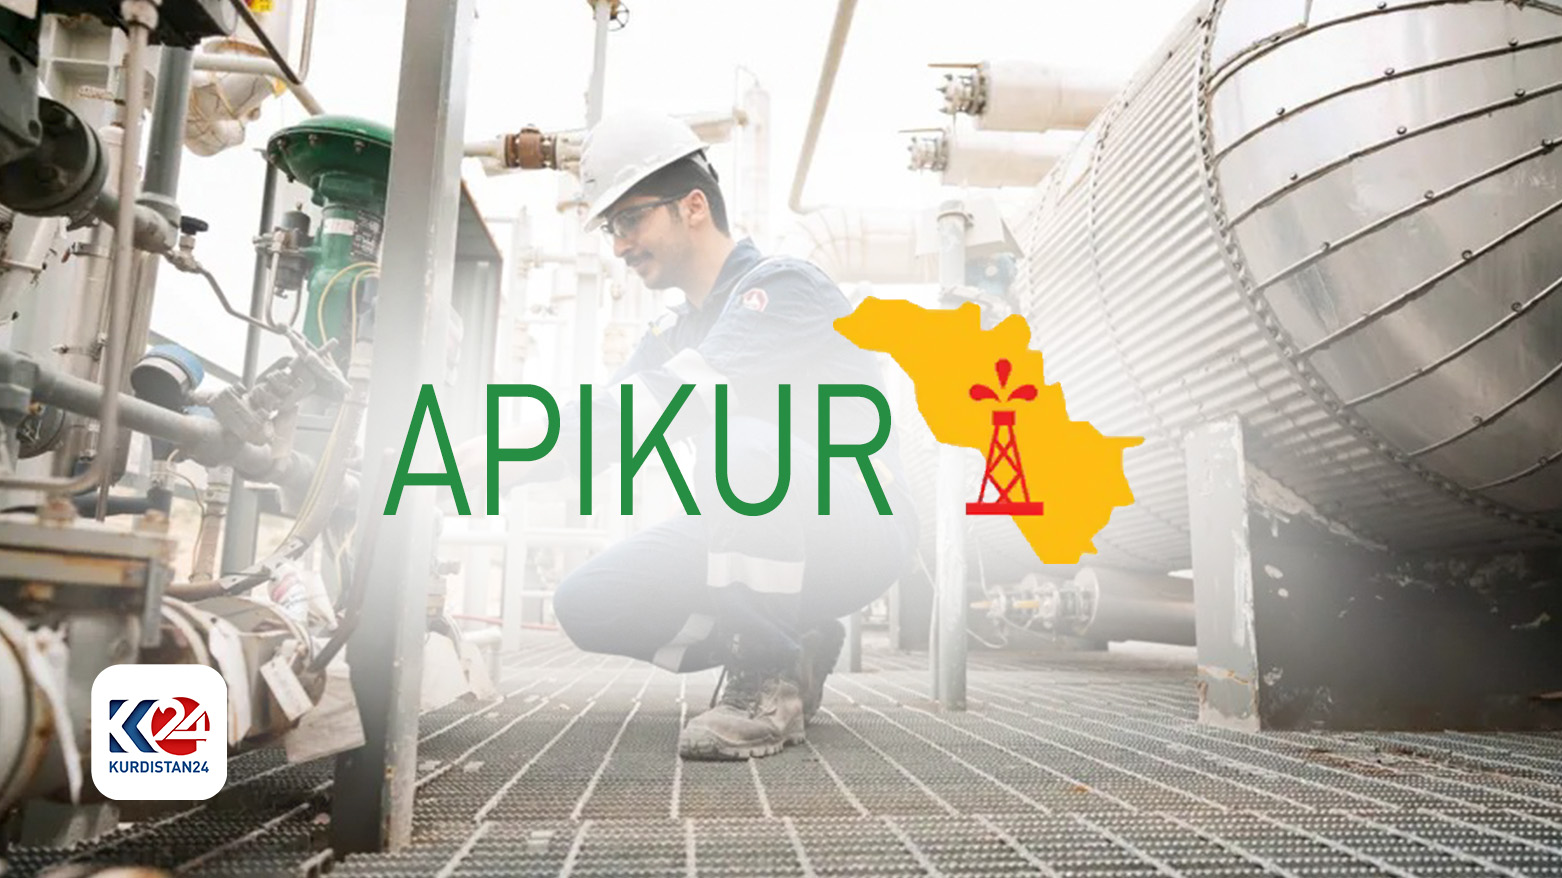 Kürdistan Petrol Endüstrisi Birliği (APIKUR)